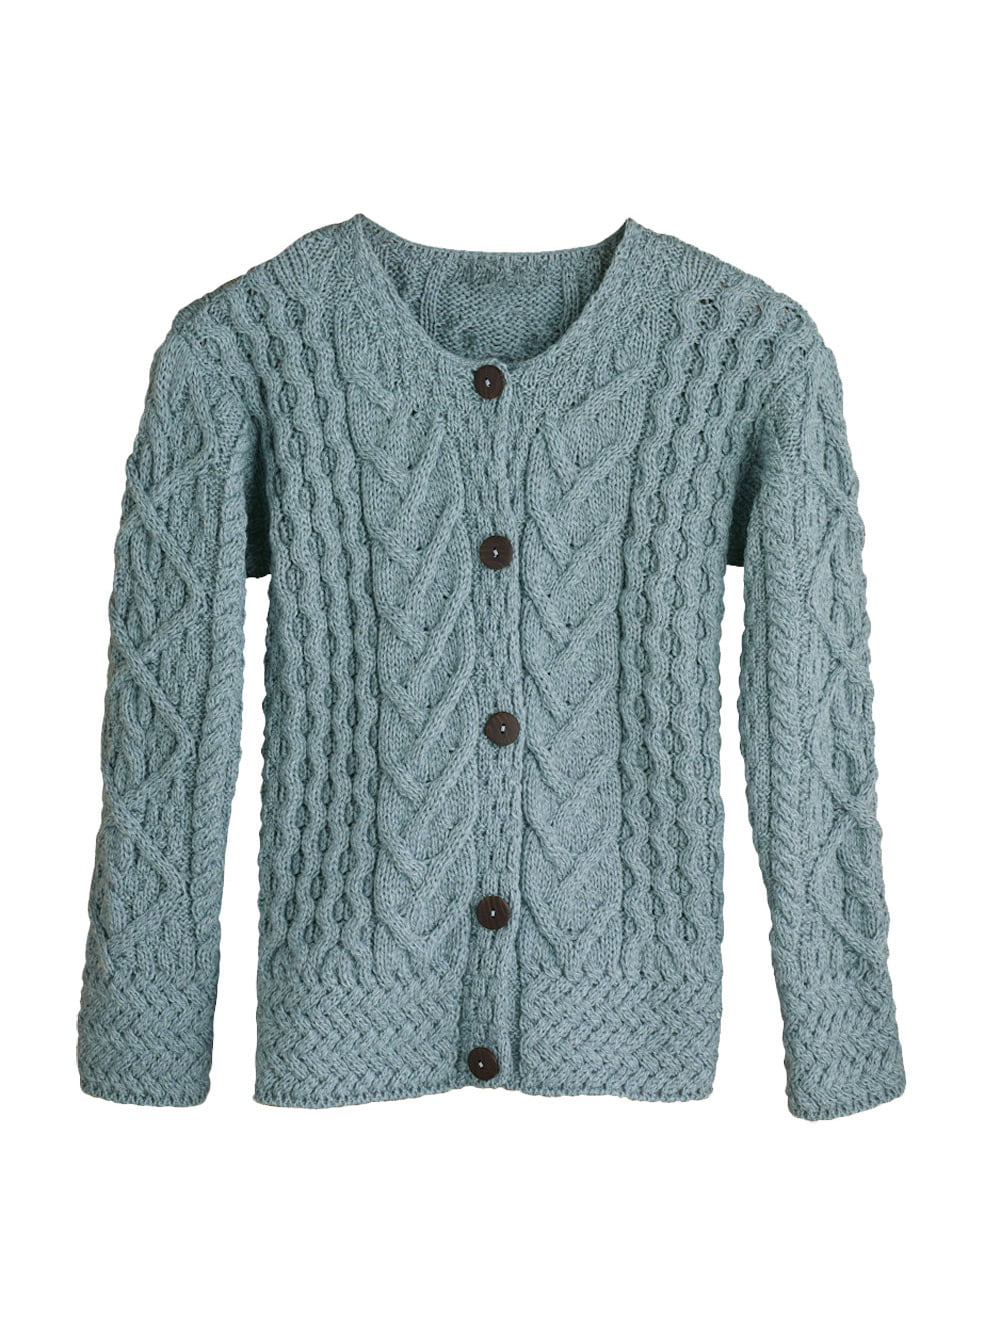 Aran Woollen Mills - Women's Button Down Sweater - Aileen Aran Cardigan ...